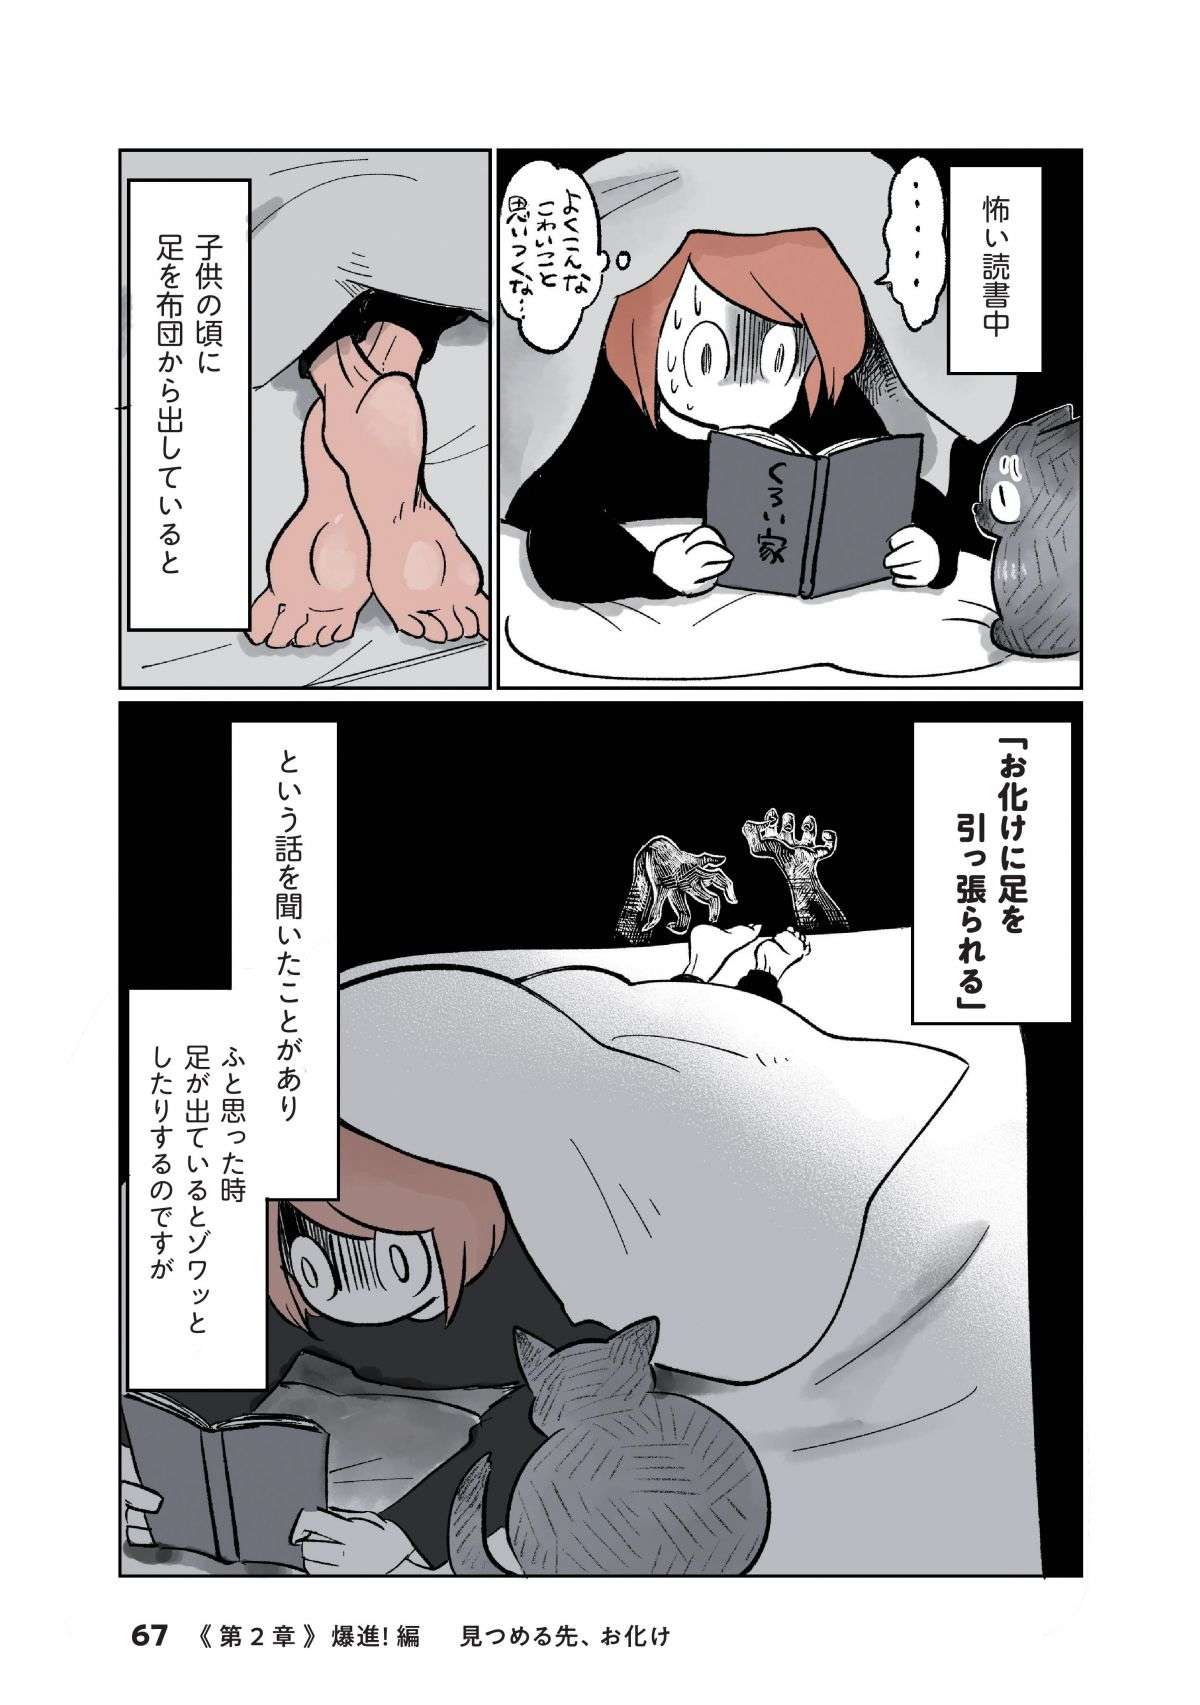 夜中、布団の上に「何か」が乗っている!? 猫とホラーの新ジャンル「怖かわいい」とは／こねこのドレイ koneko_dorei7-4.jpg